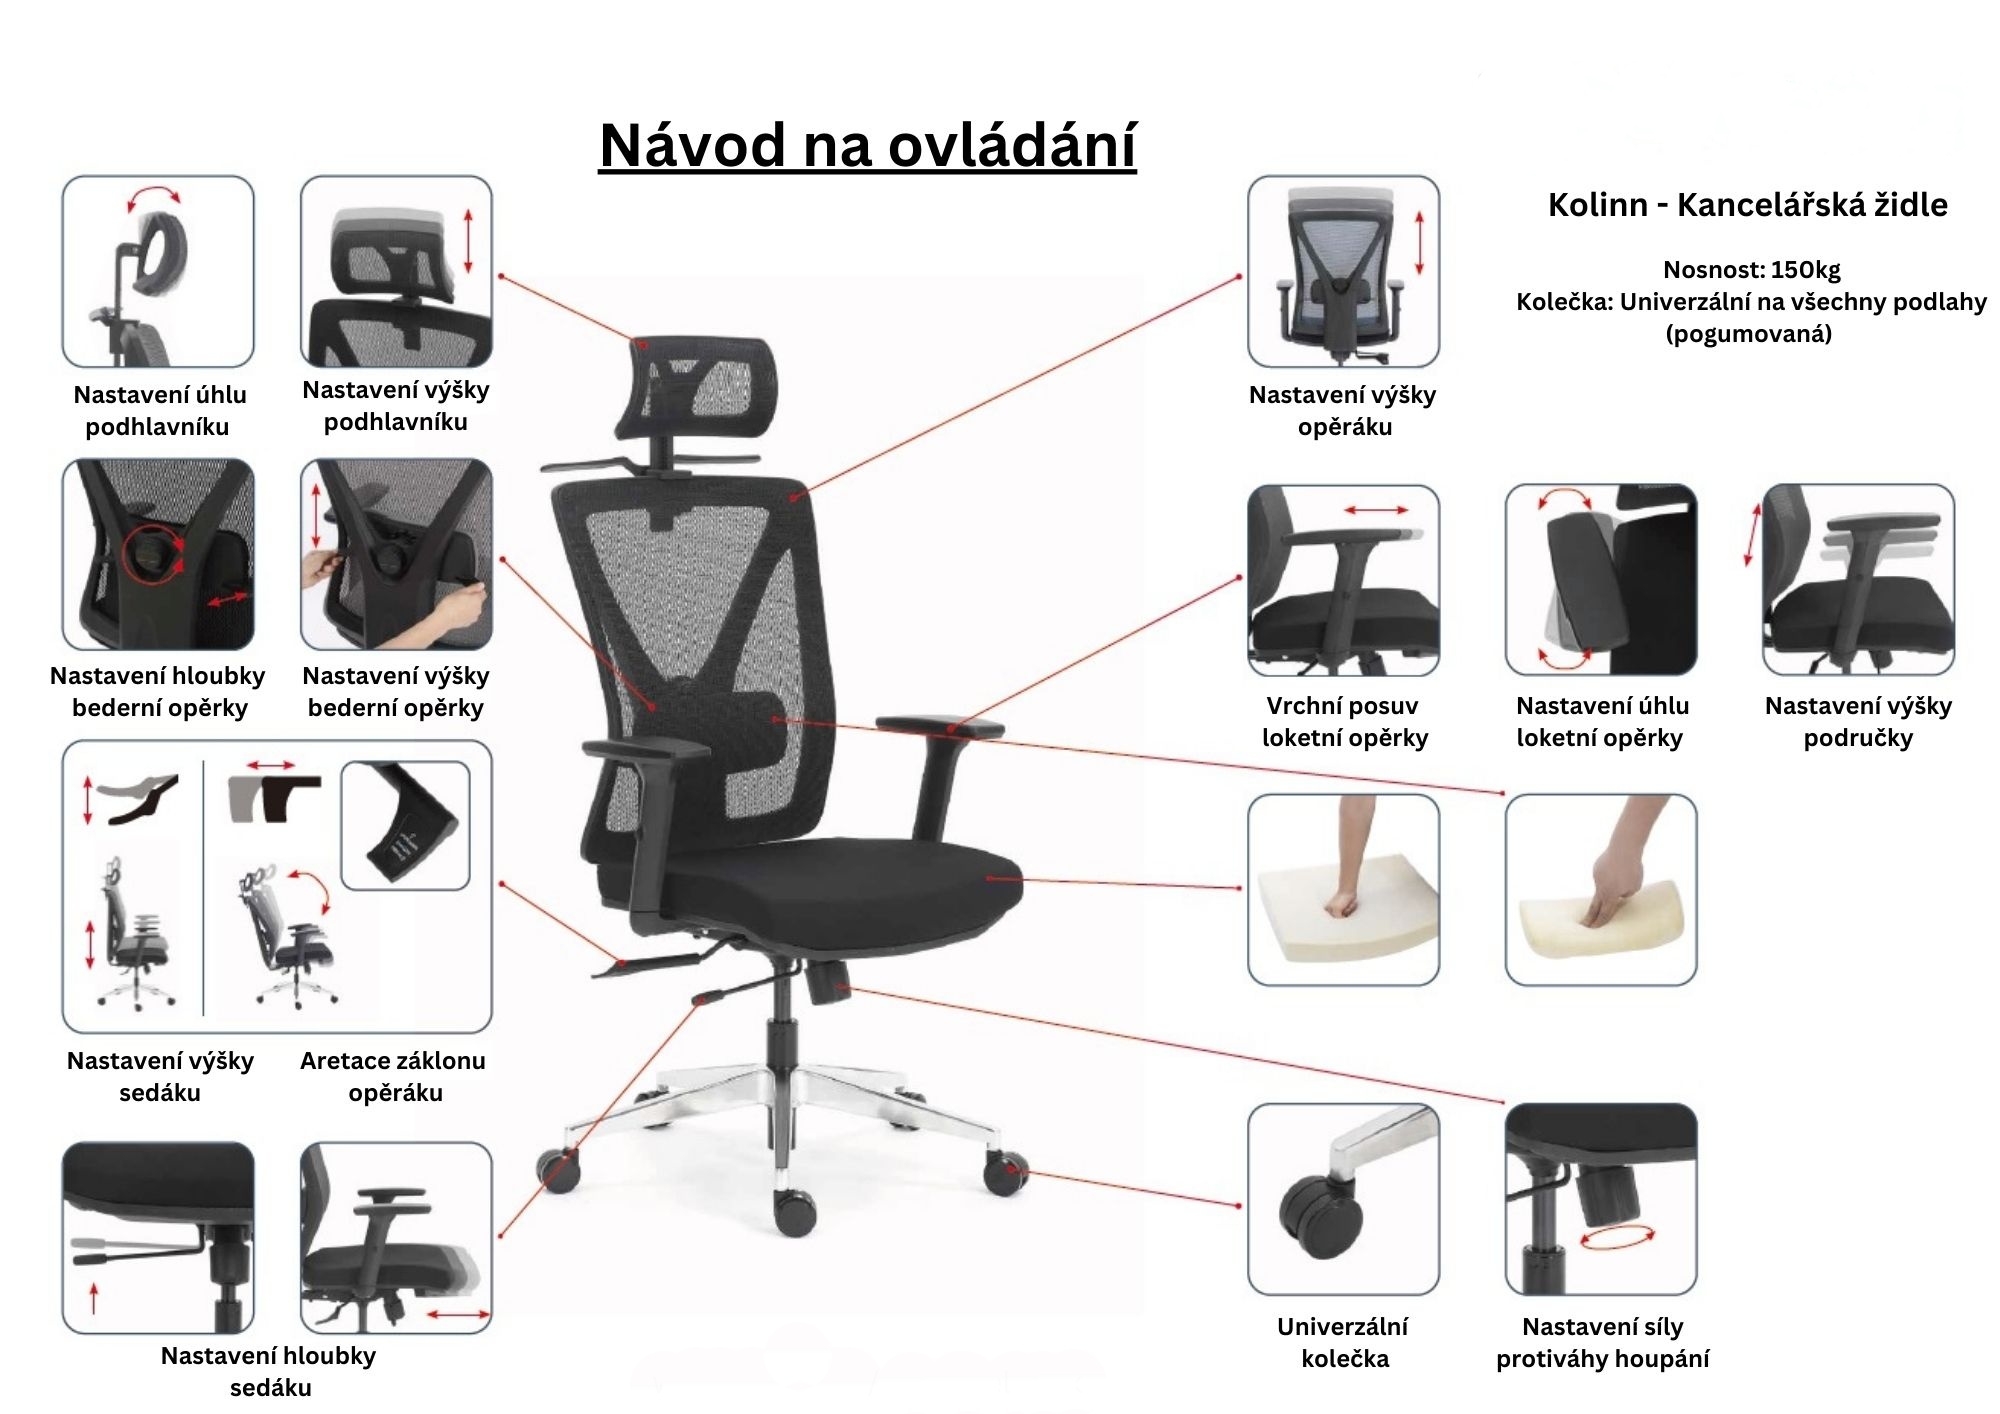 Kancelářská židle Kolinn - funkce